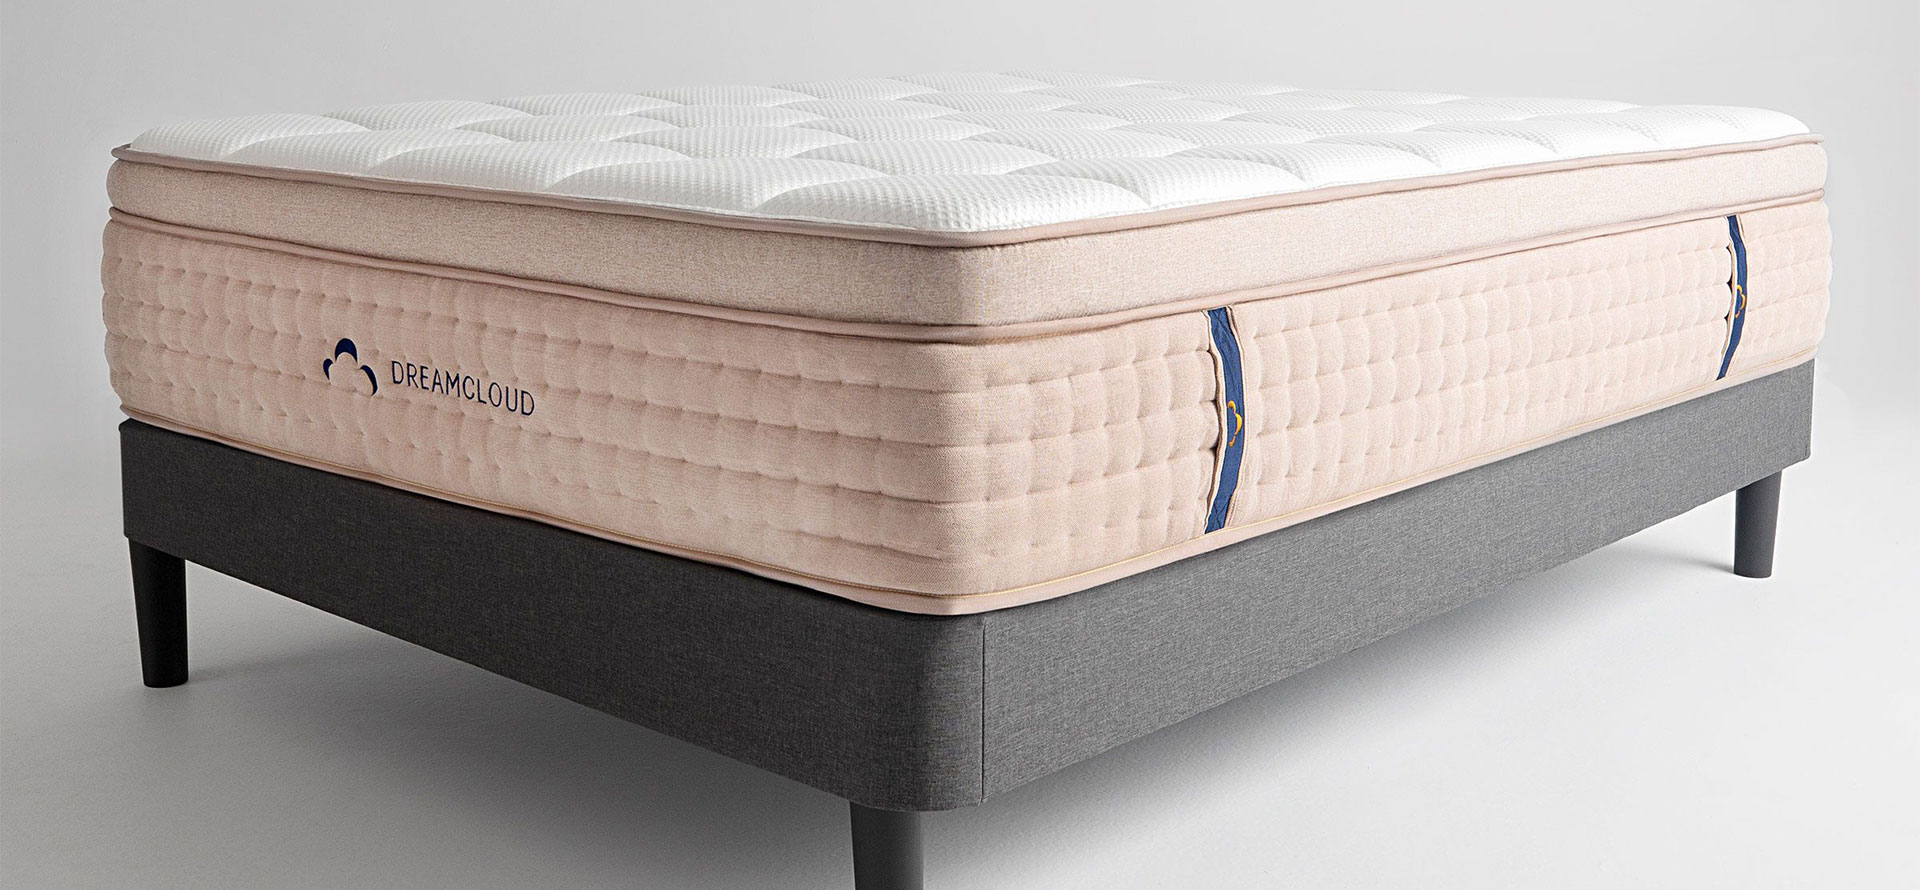 DreamCloud luxury mattress.